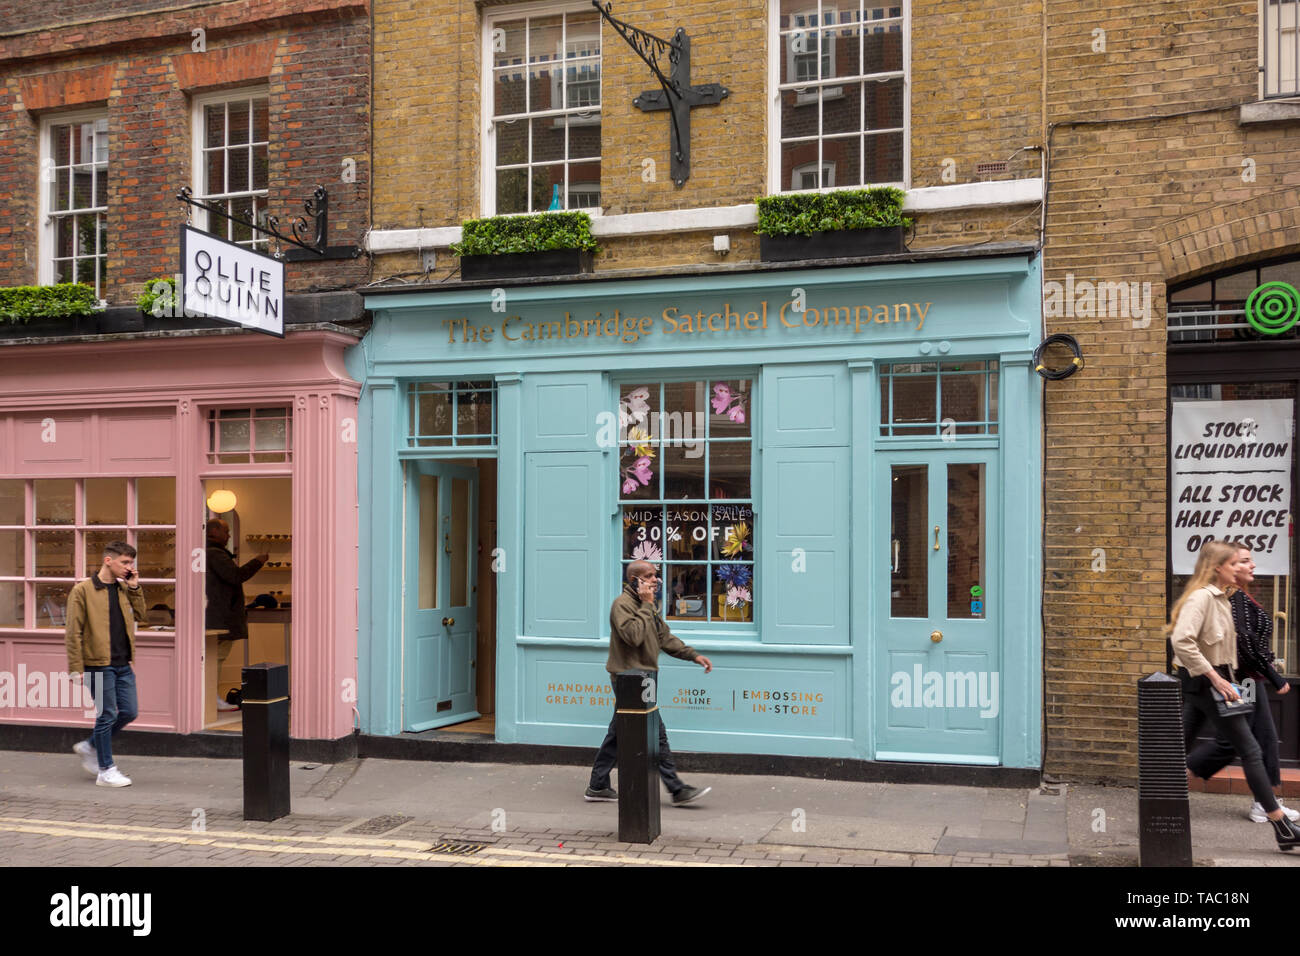 Il 3 maggio 2019, Covent Garden, Londra: Negozio esterno del Cambridge sacchetta Company shop in Neal Street, Covent Garden di Londra, Regno Unito Foto Stock